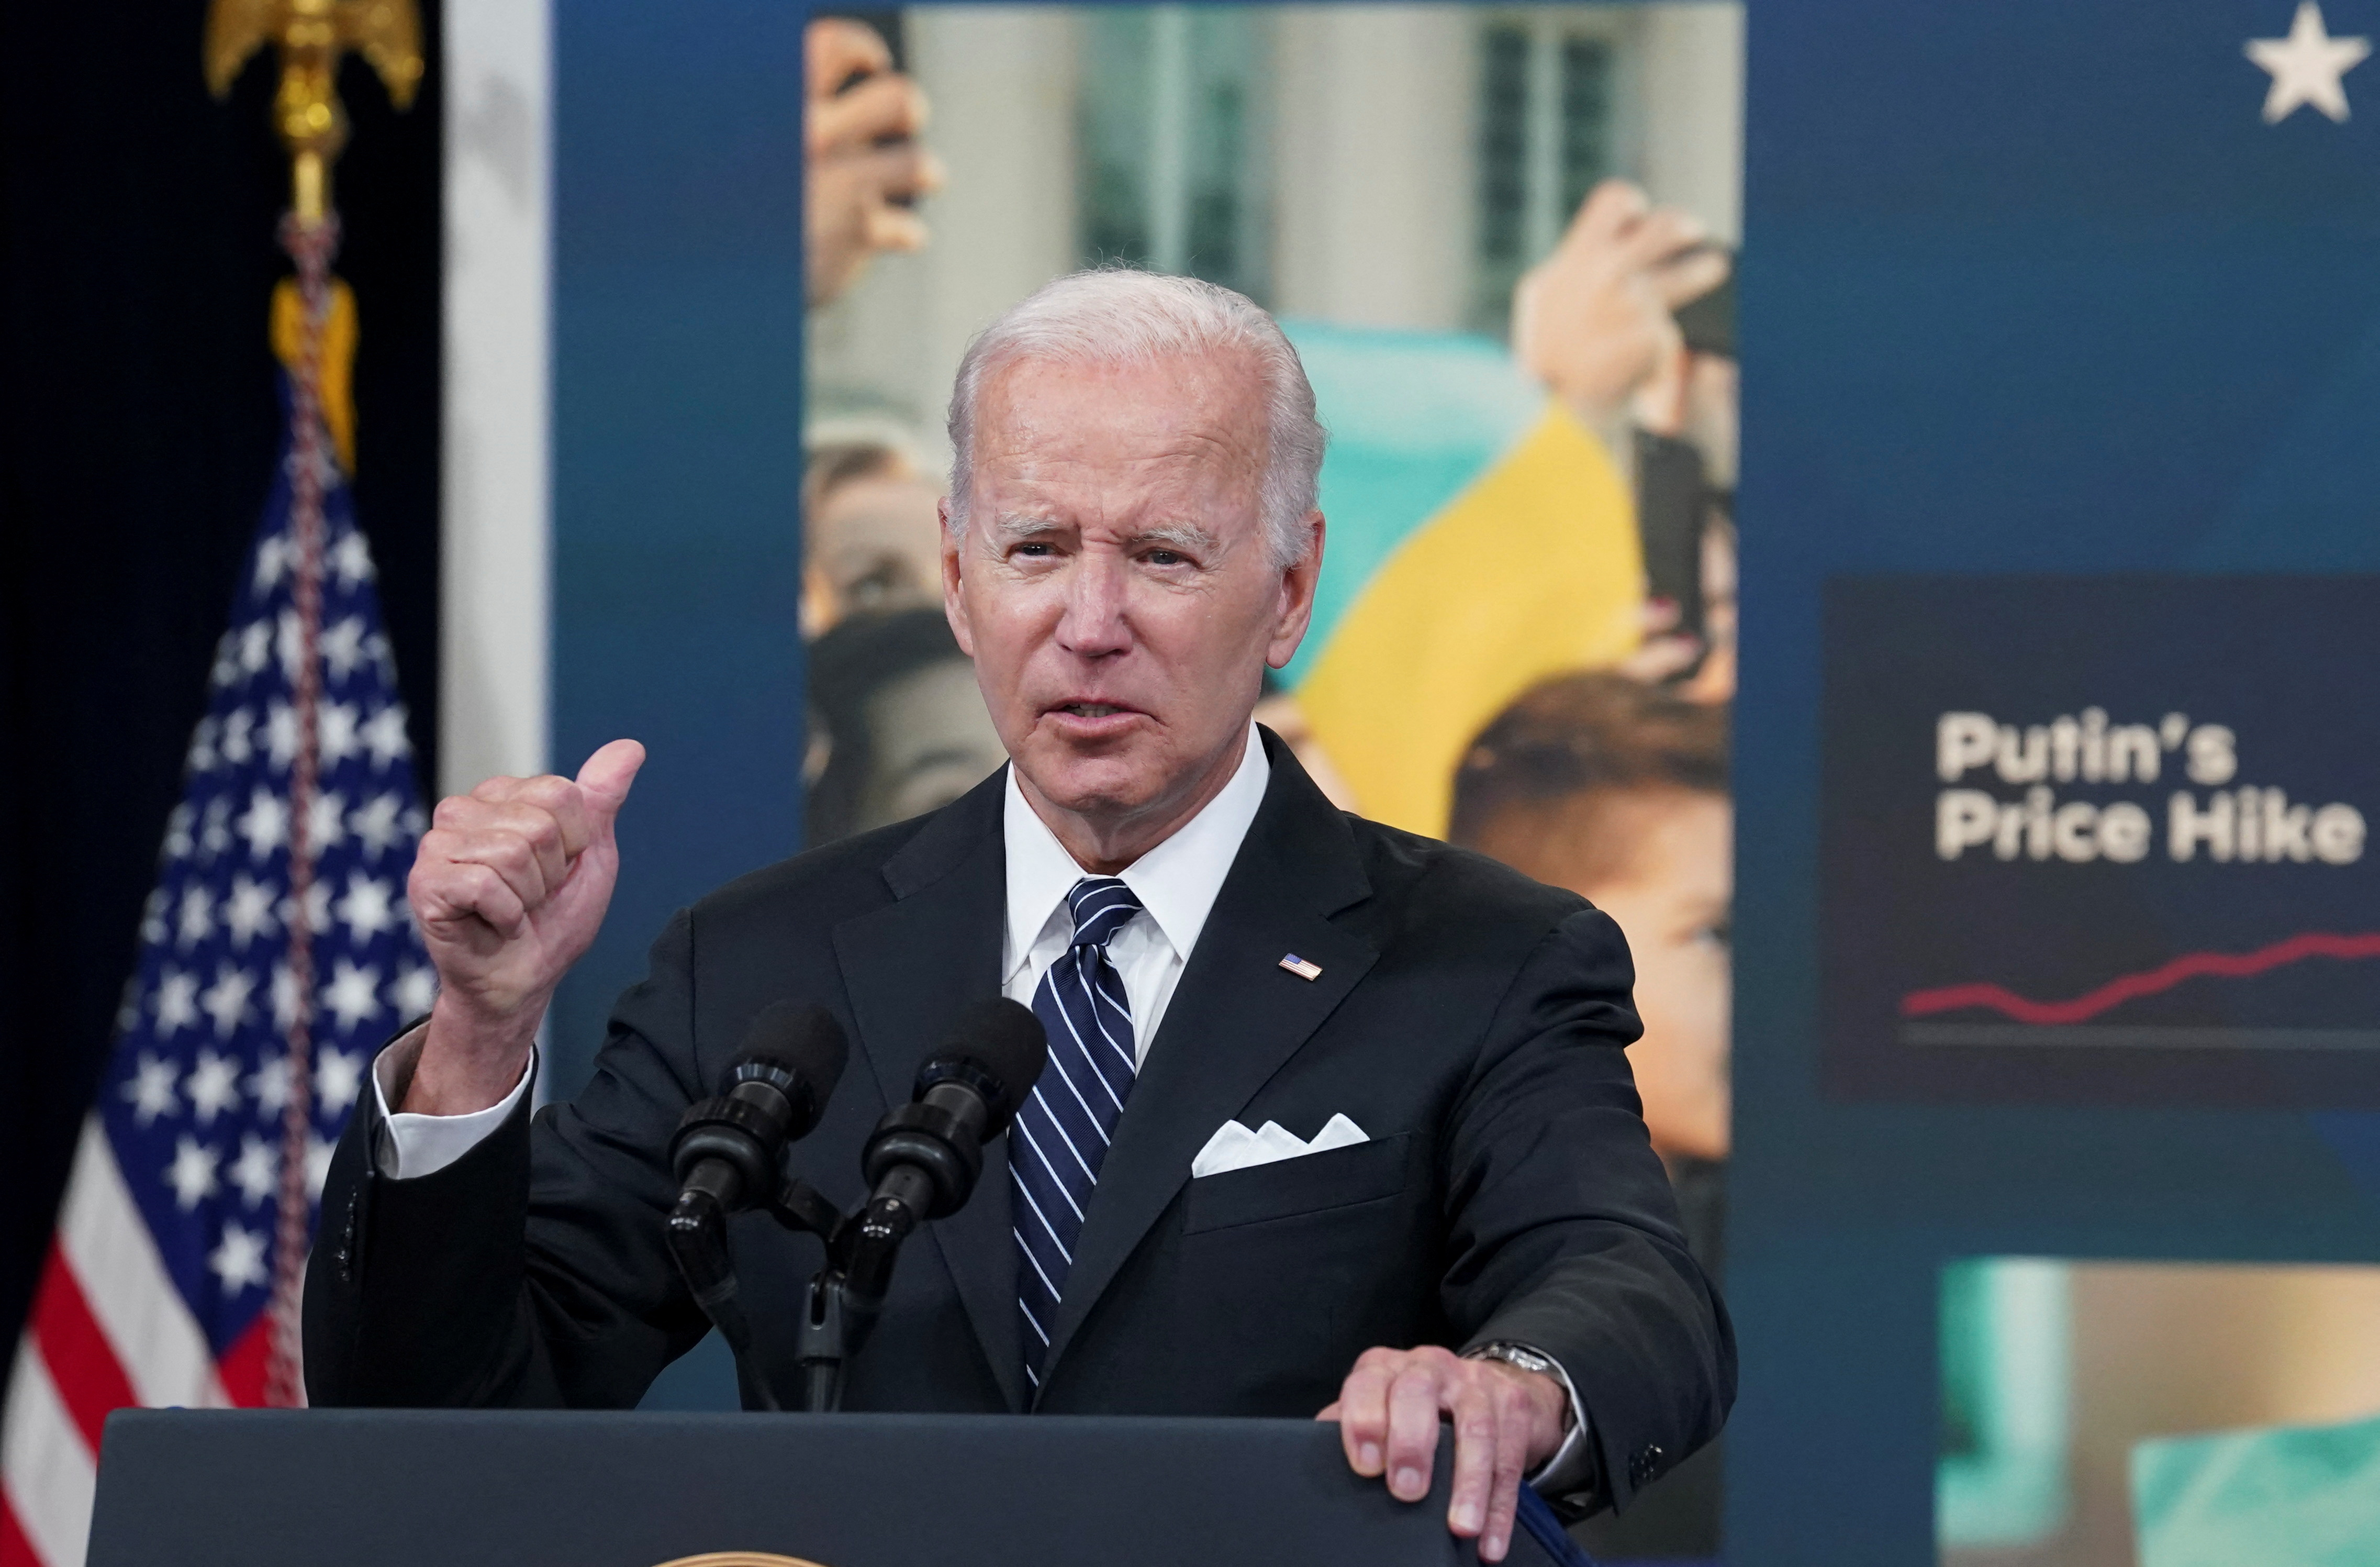 U.S. President Joe Biden speaks about gas prices at the White House in Washington